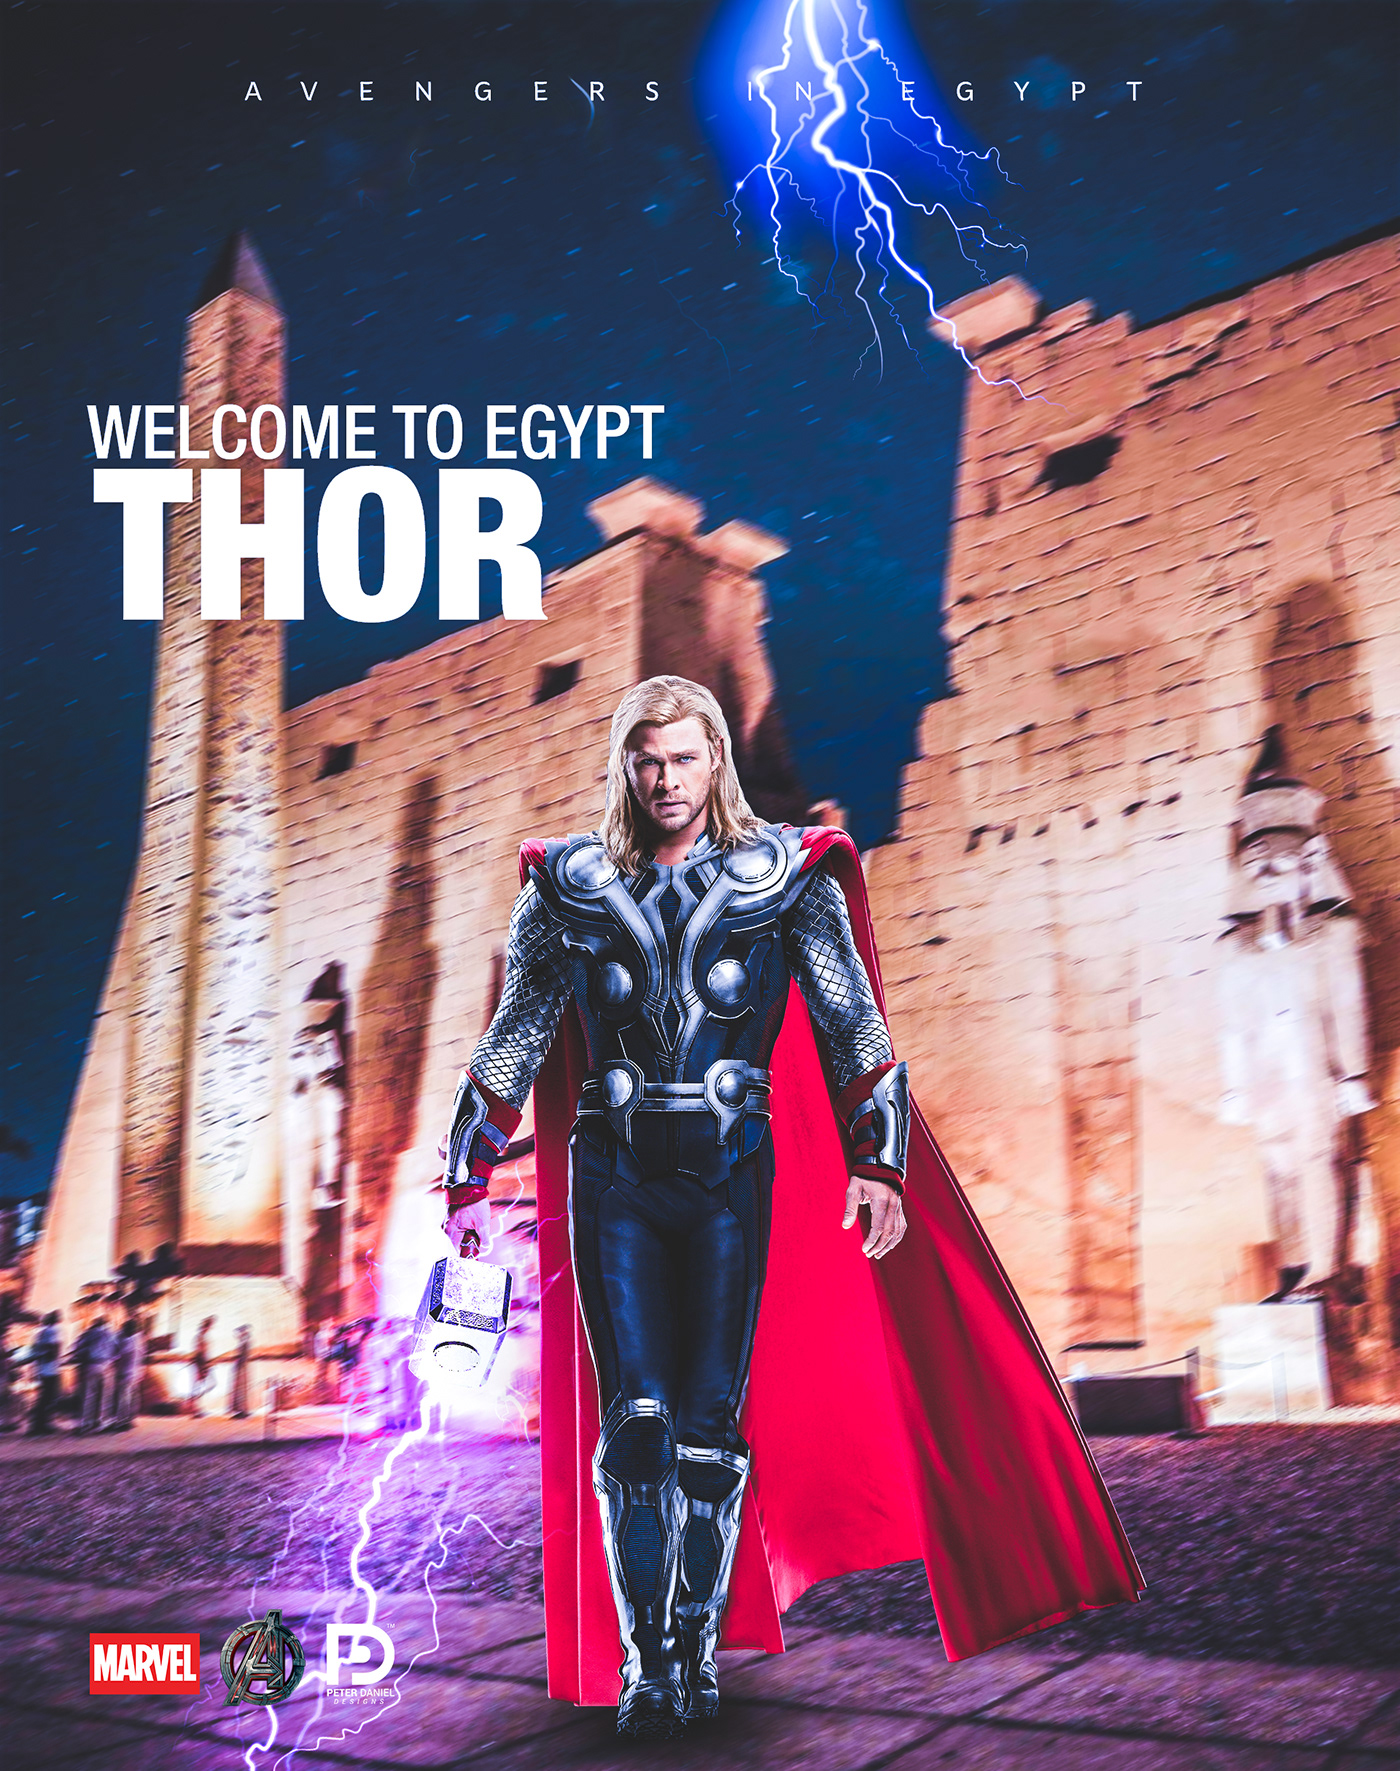 Avengers marvel egypt Peter Daniel spiderman Thor avengers in egypt antman captin america dc